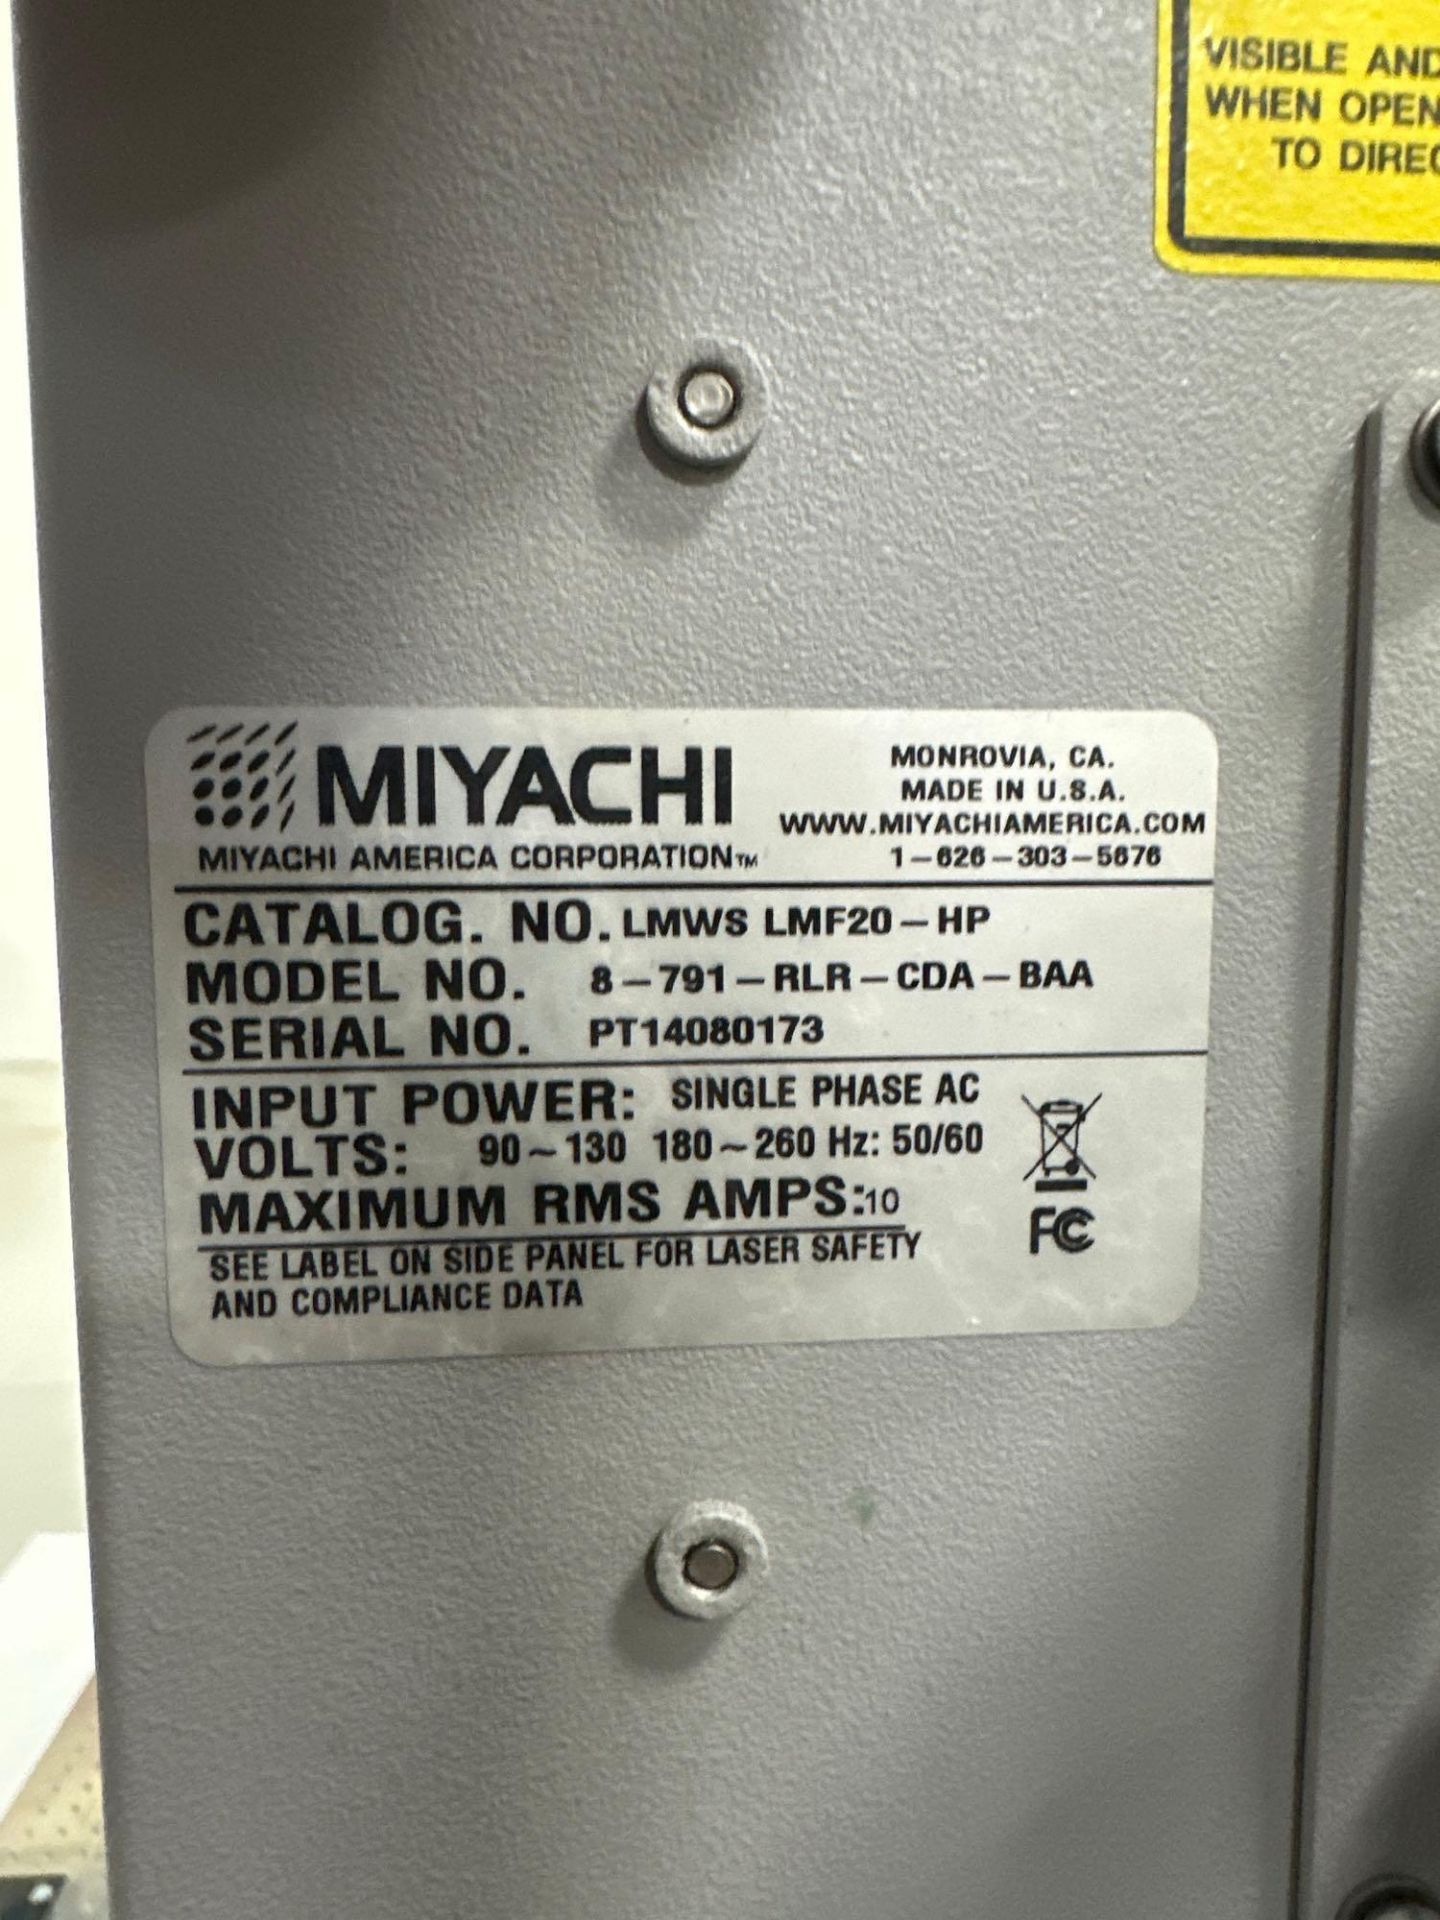 Amada Miyachi Unitek 52W Fiber Laser Marker, s/n PT14080173 *Delayed for sale in July* - Image 9 of 9